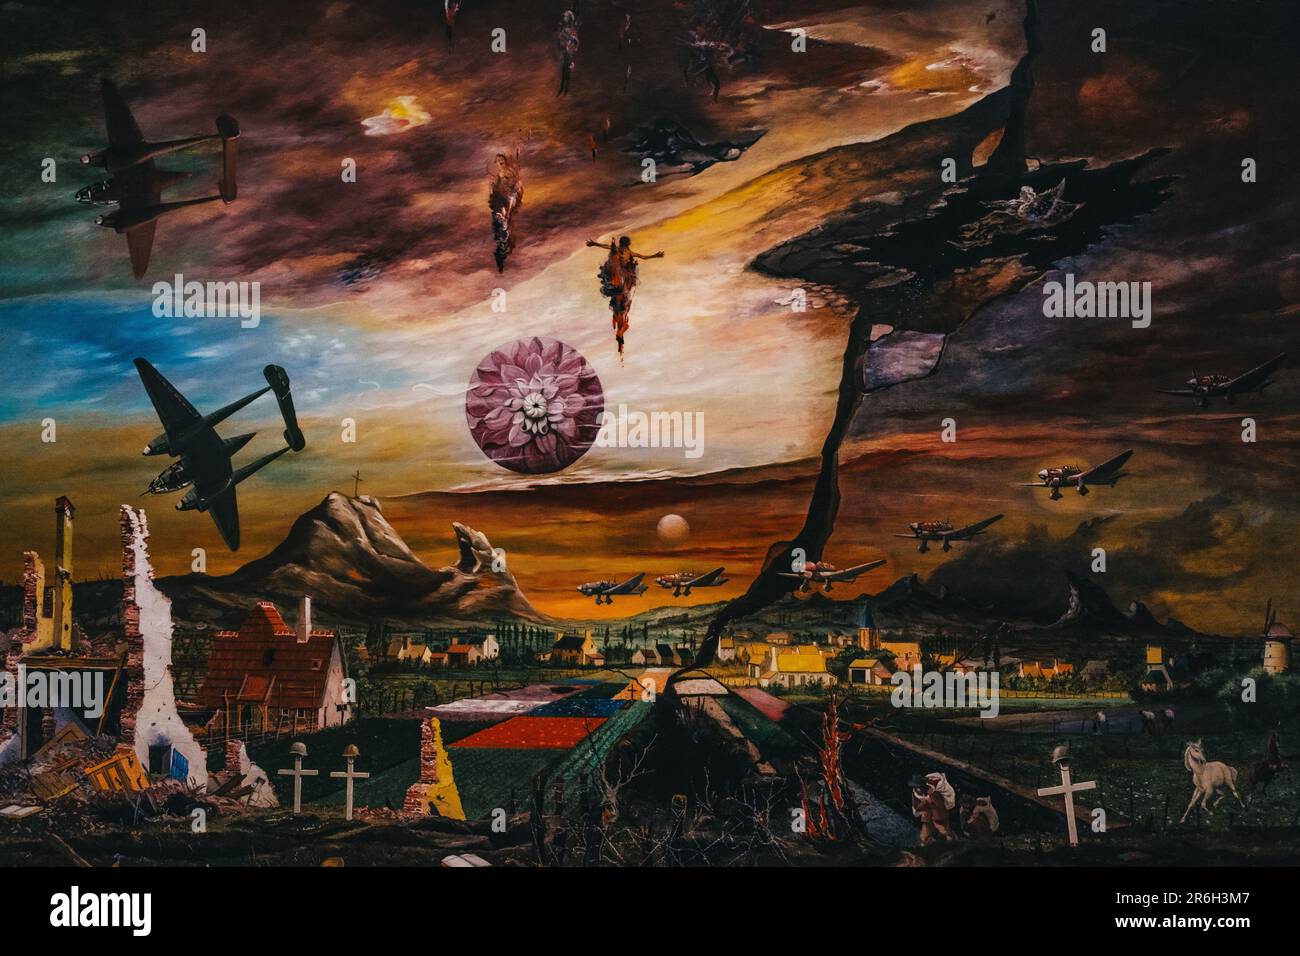 Peinture à l'huile d'une scène de bataille avec une variété de soldats, d'armes et d'autres éléments Banque D'Images